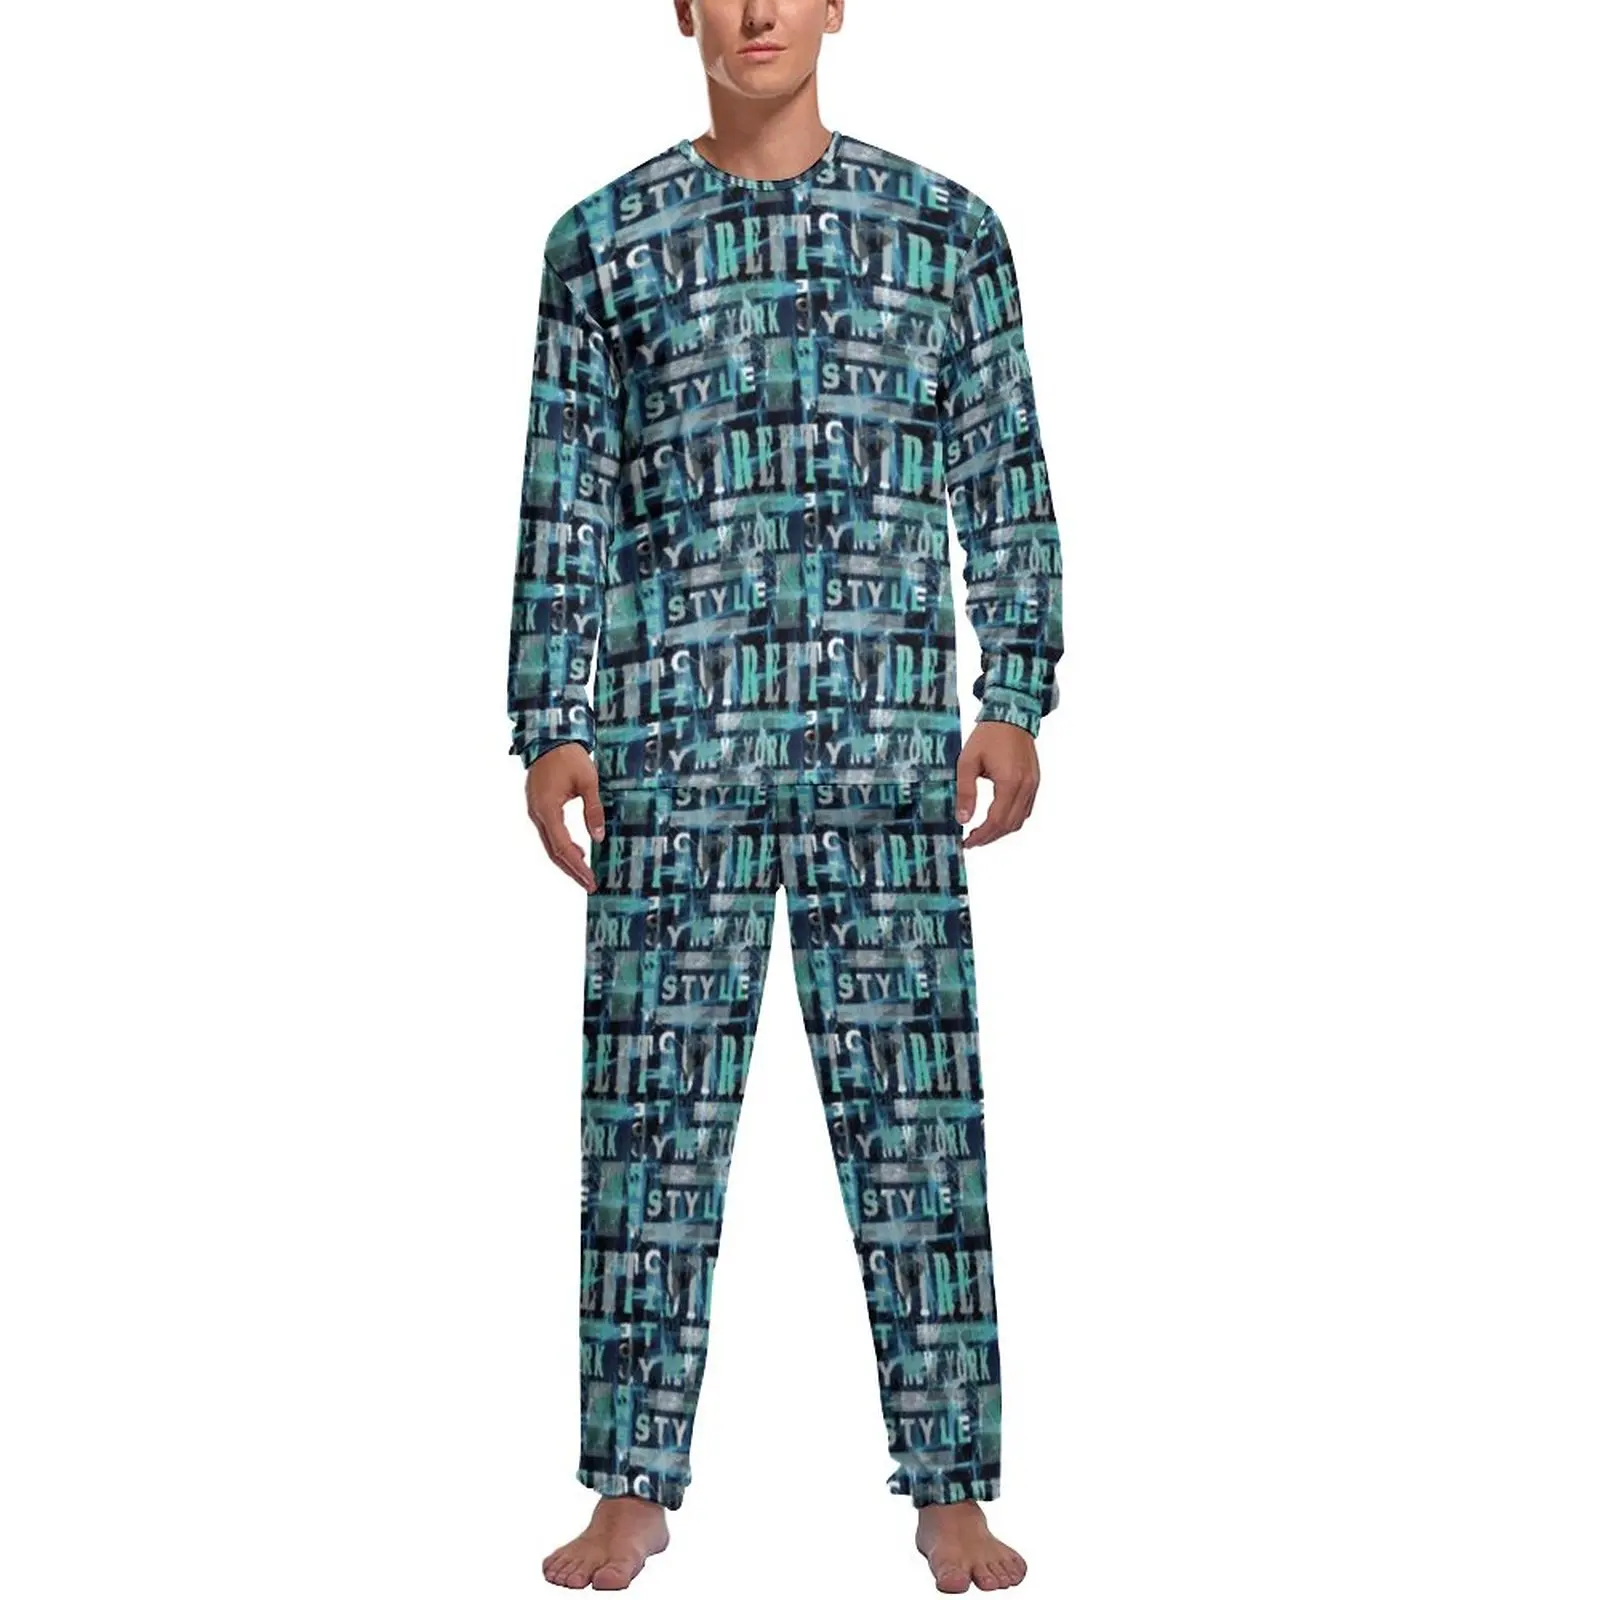 Word Graffiti Pajamas Man Urban Style Print Warm Nightwear Winter Long Sleeve 2 Piece Casual Graphic Pajama Sets